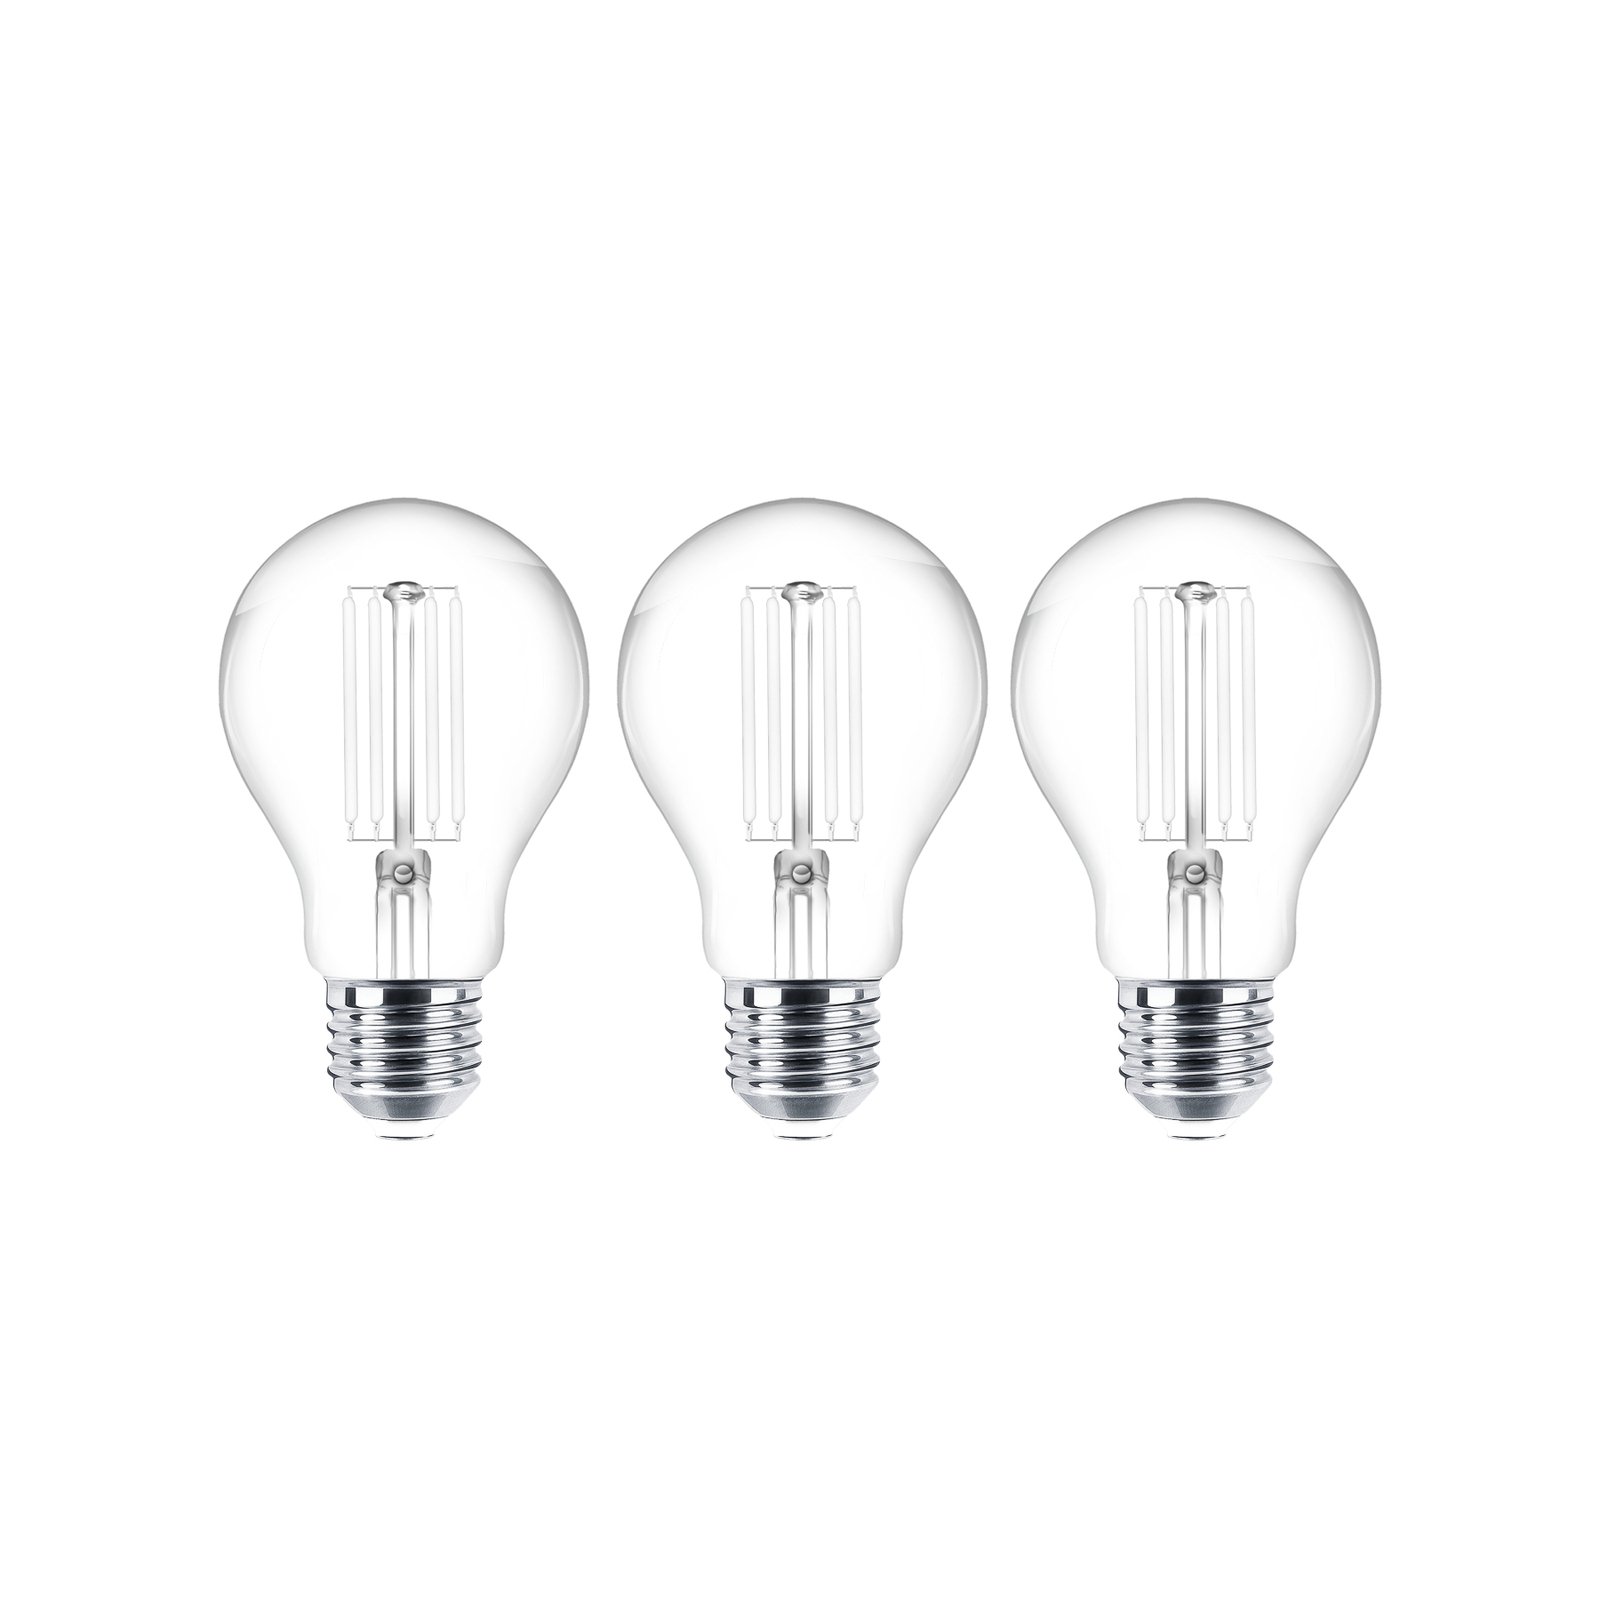 LED bulb filament E27 clear 7W 2700K 806lm set of 3